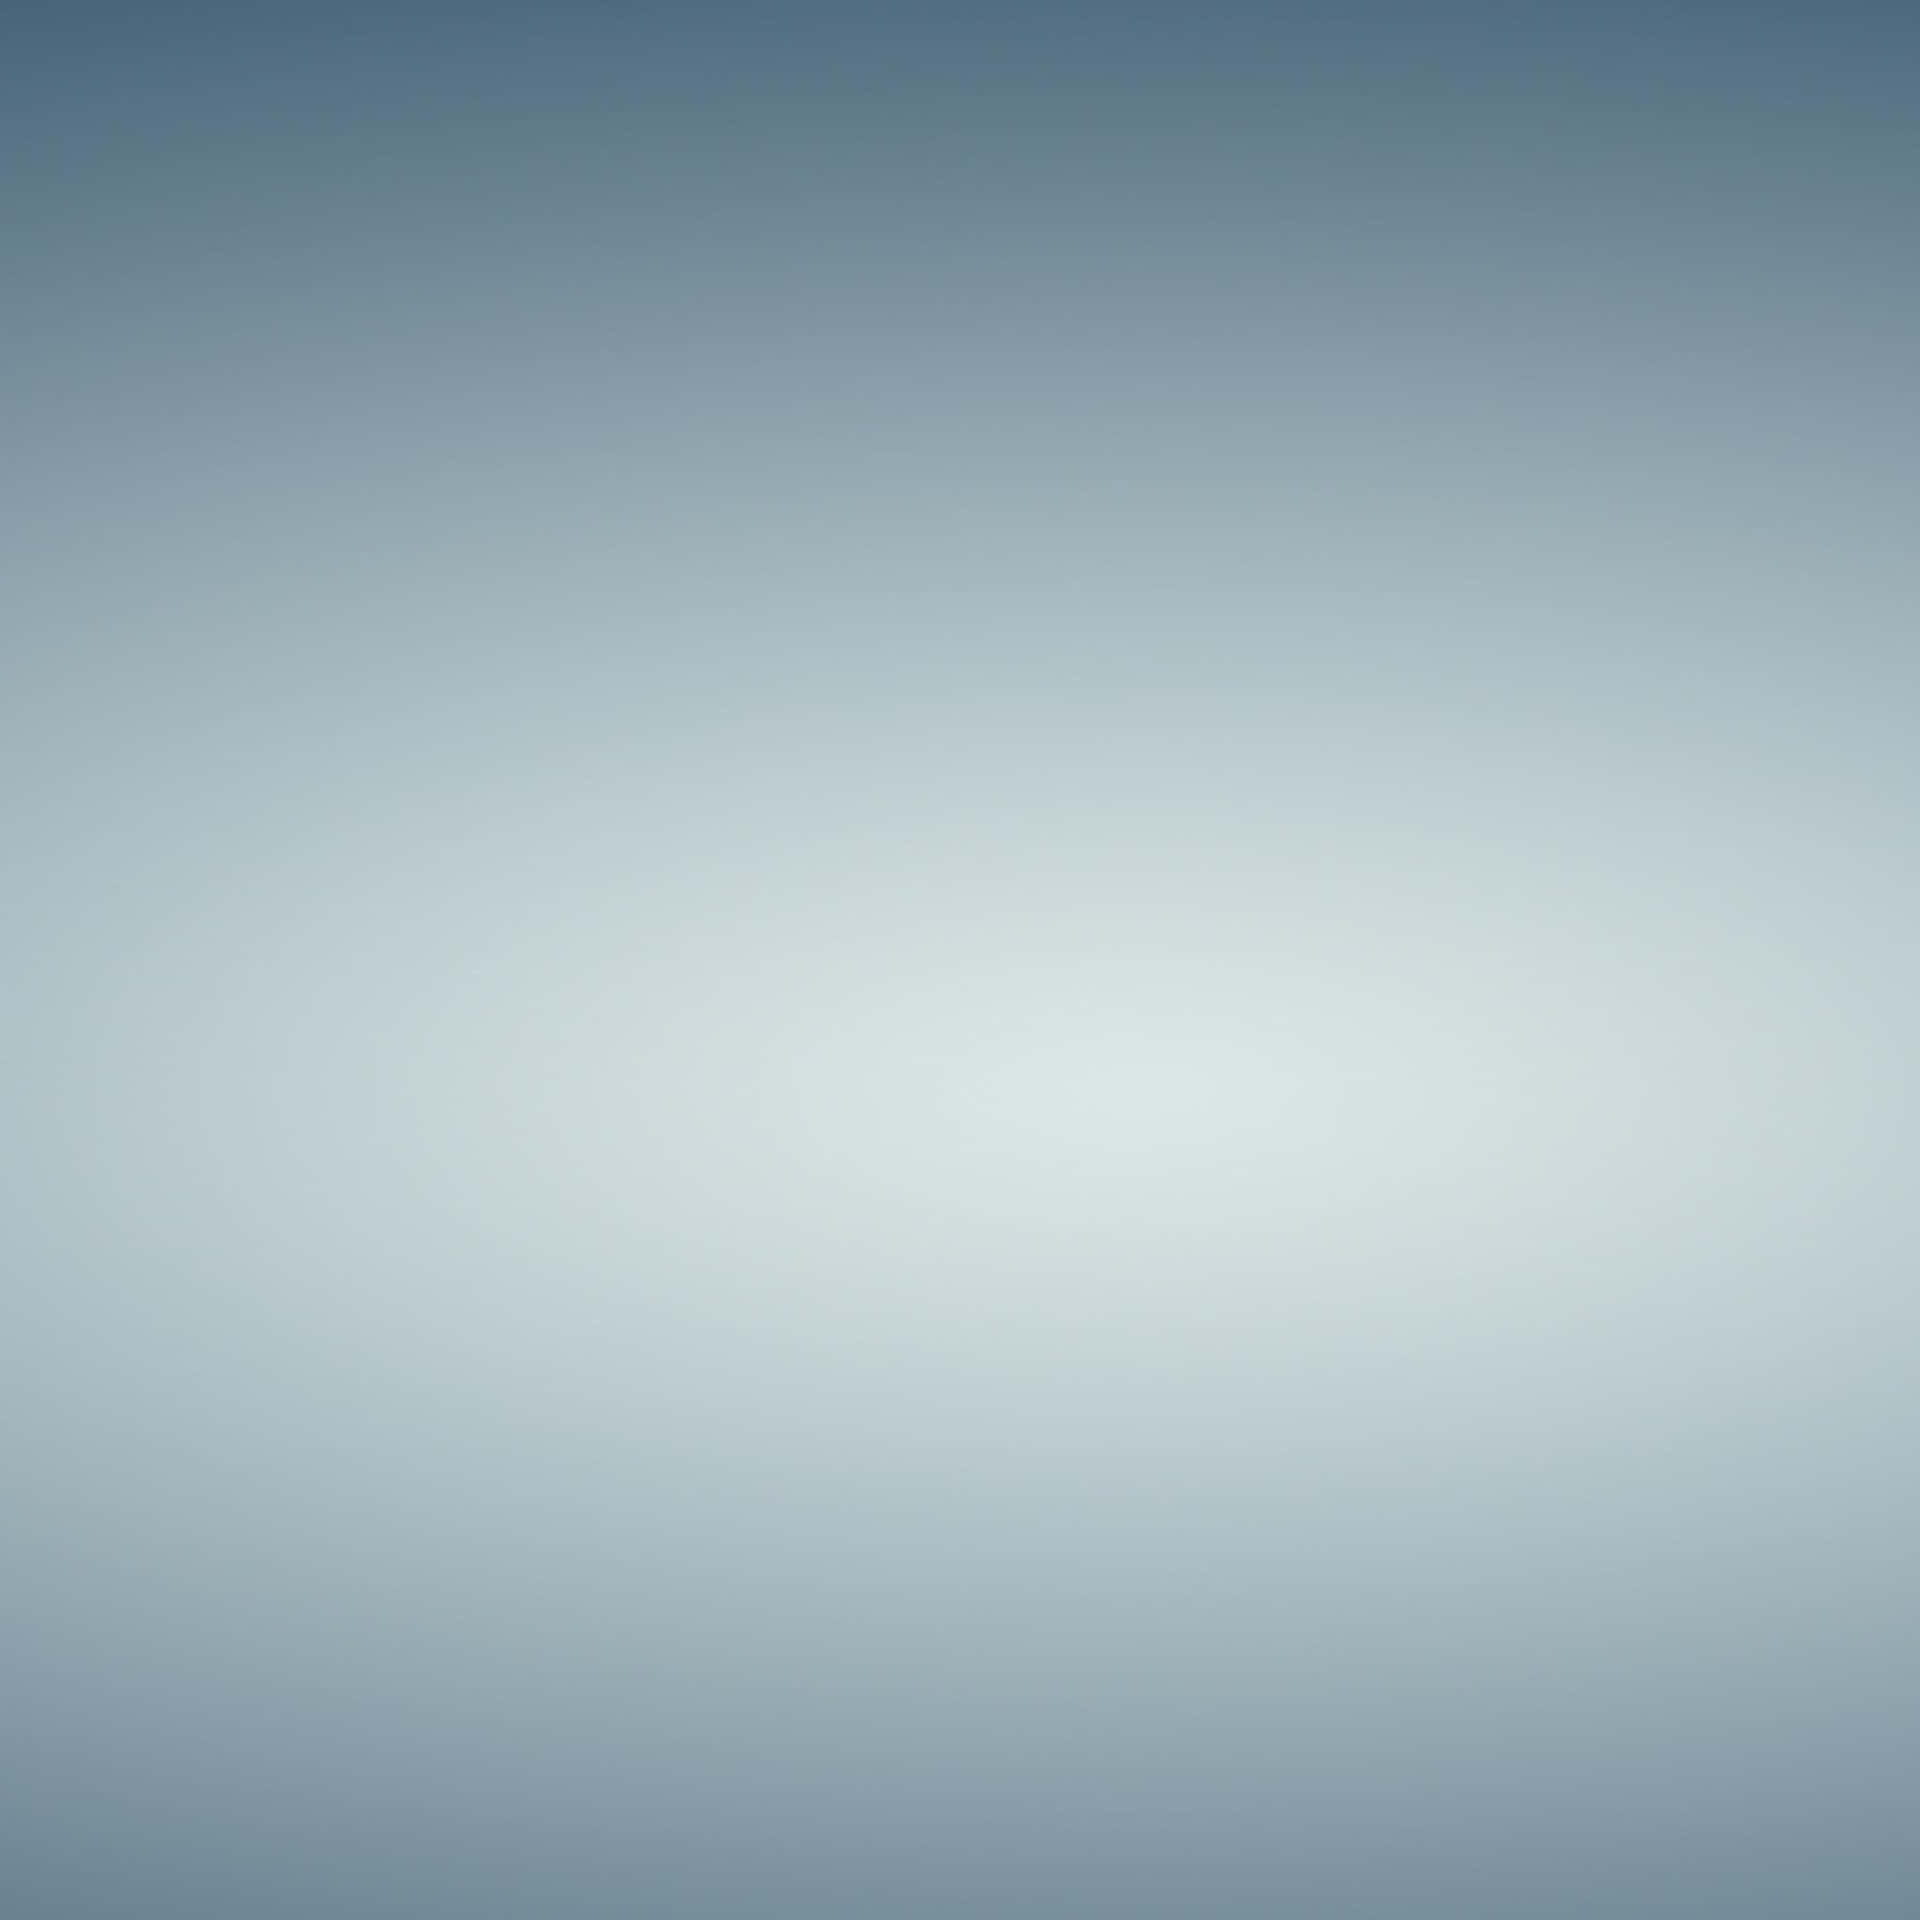 Hintergrundmit Blauem Farbverlauf, Dunkelblauer Rand Mit Weißem Zentrum